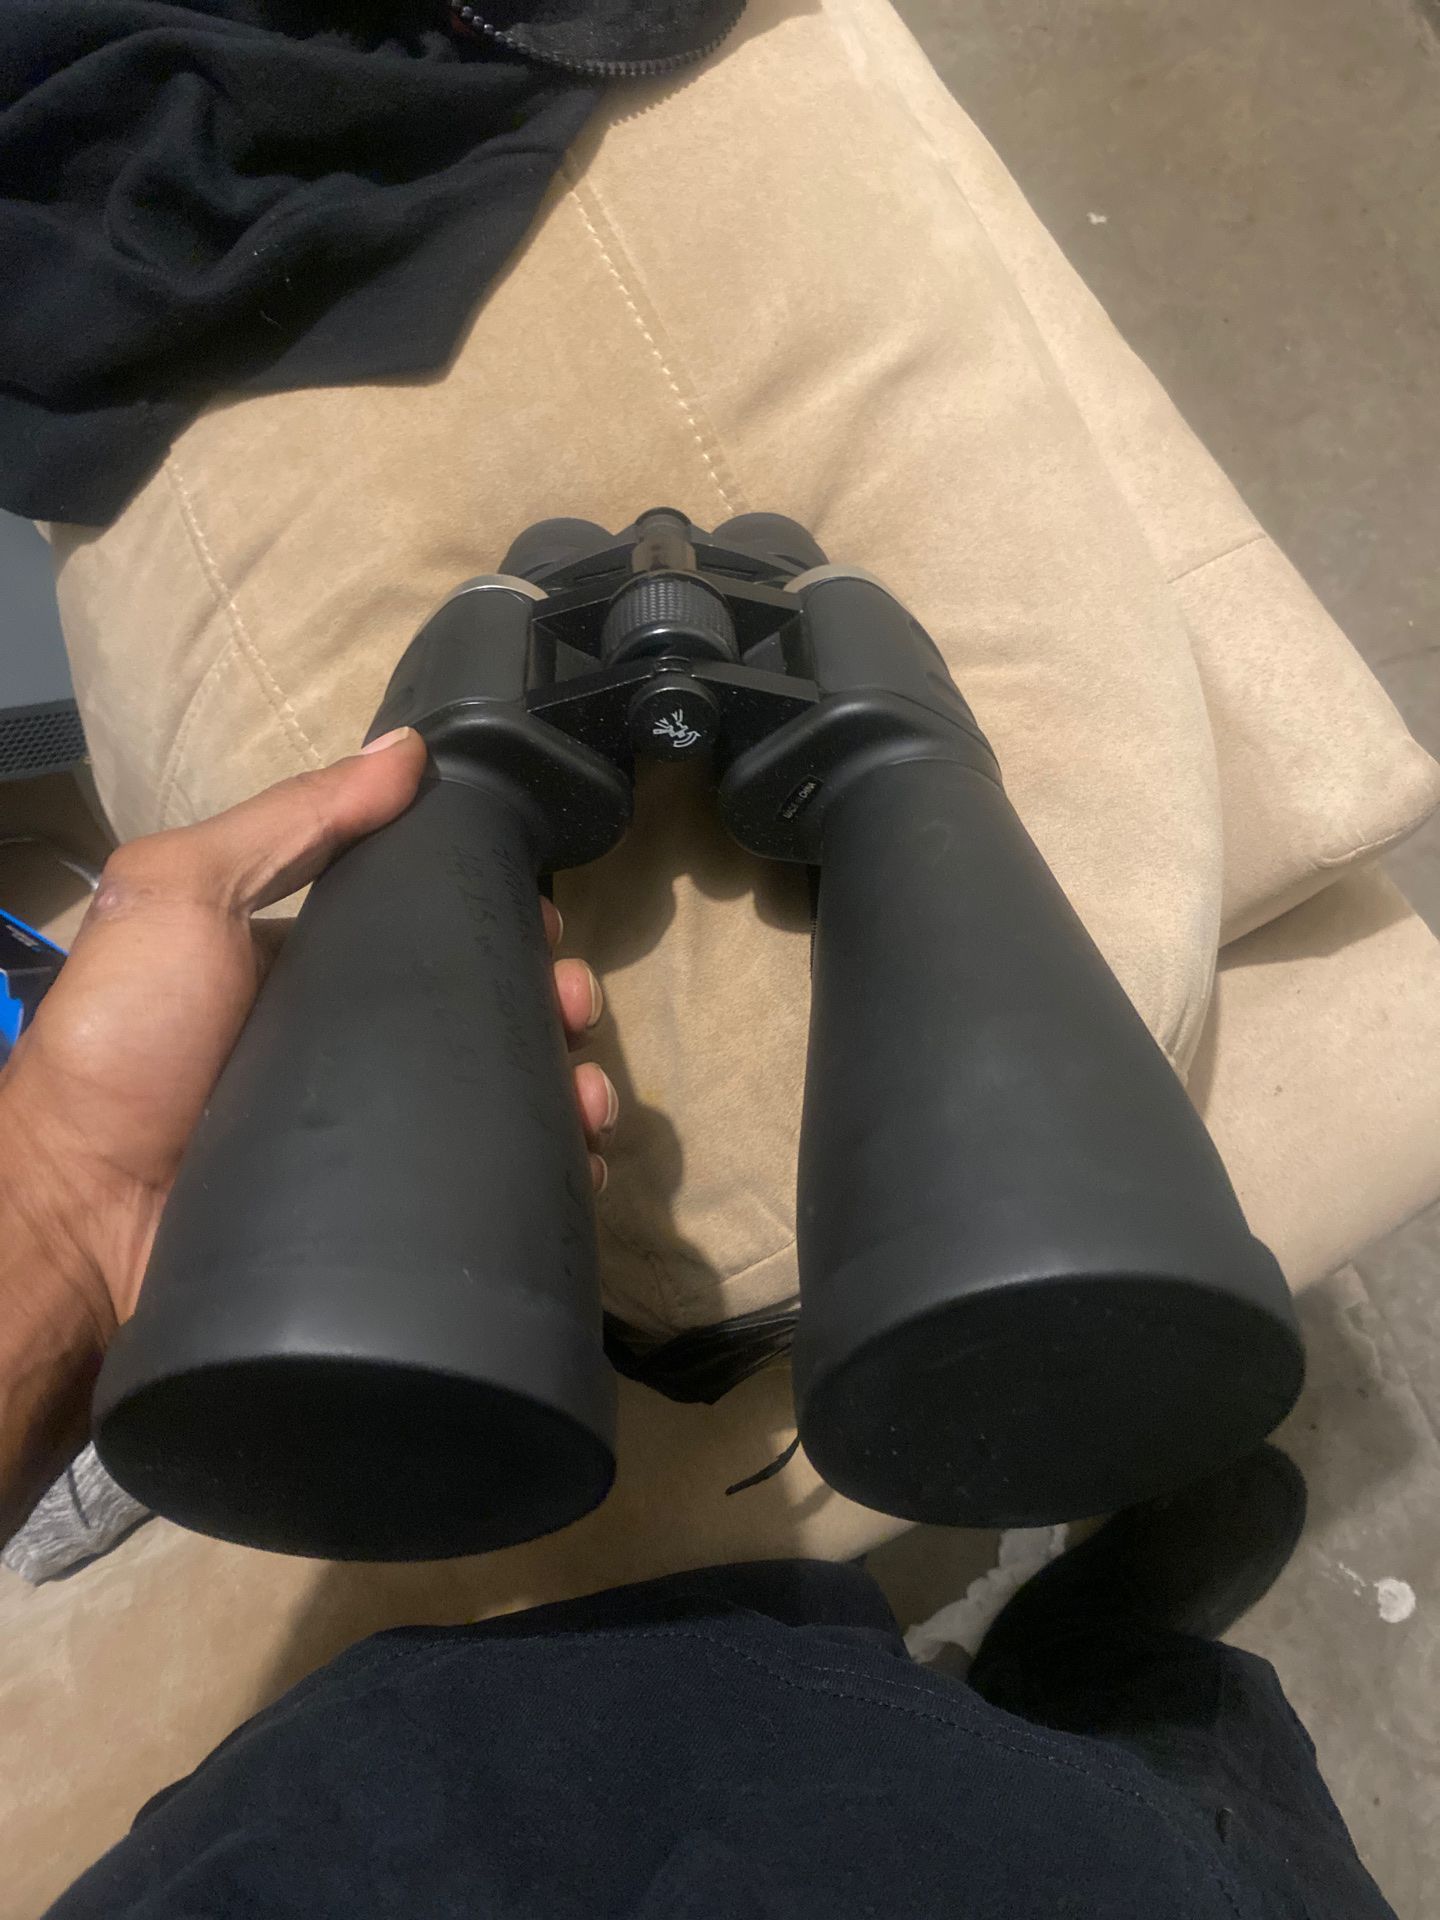 Beta optics 144x military zoom binoculars